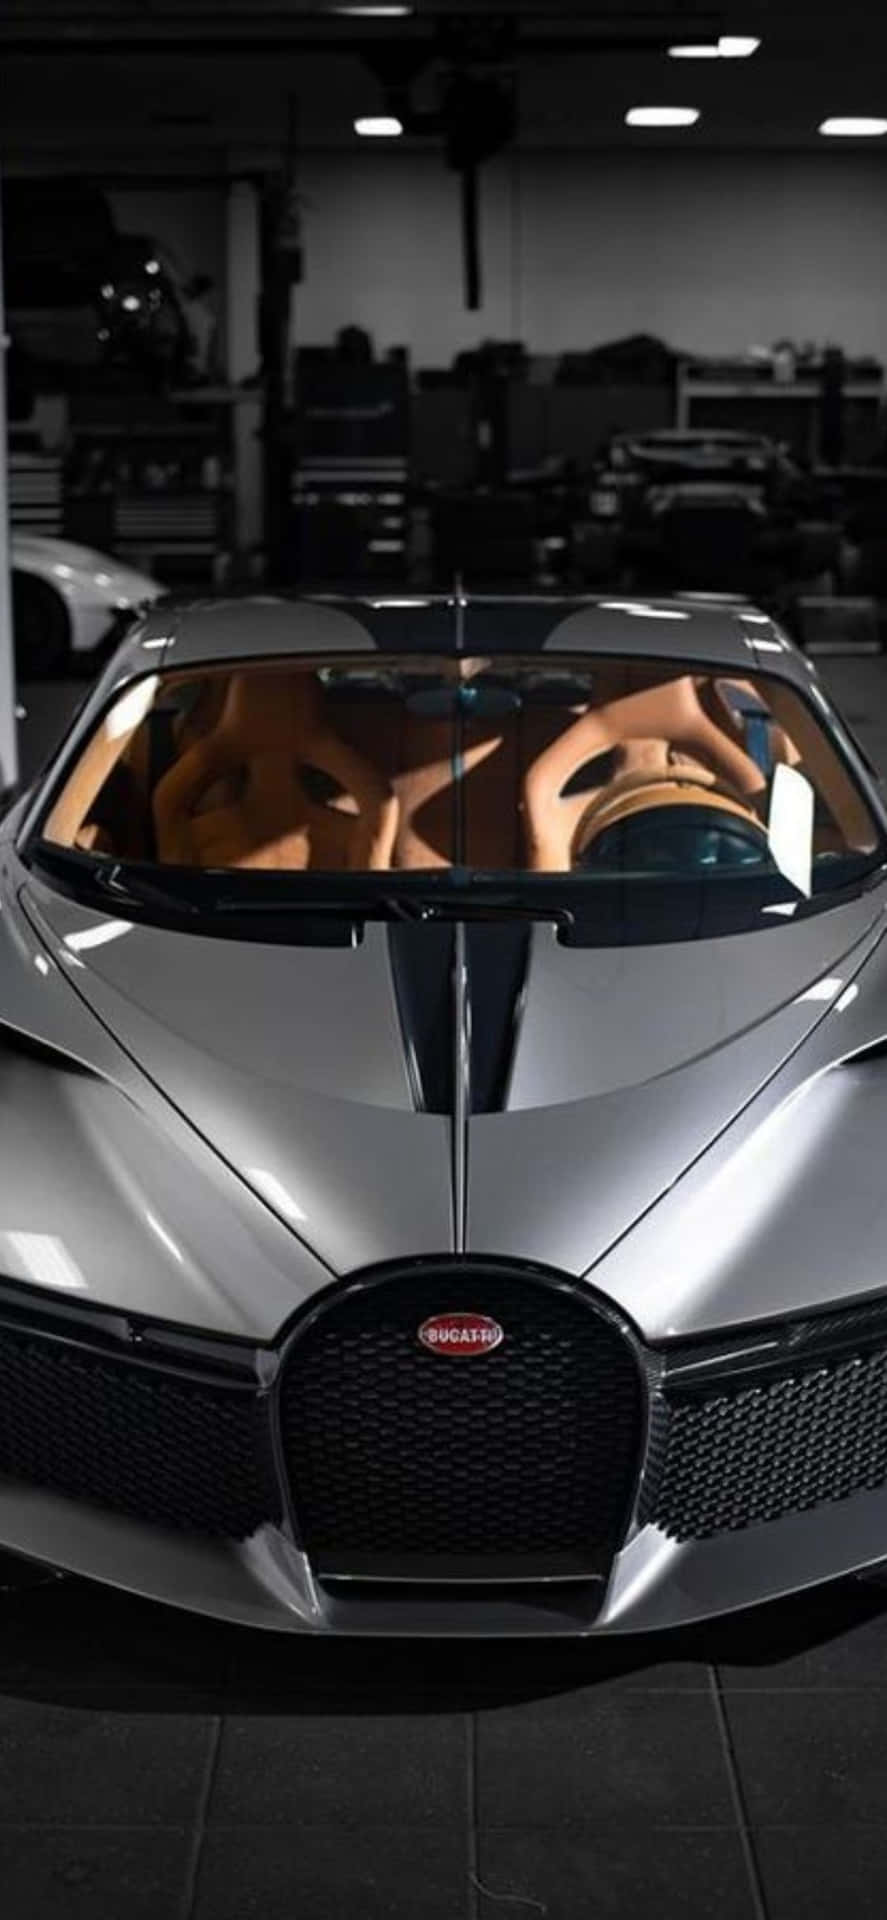 Lujoúnico: Explora El Mundo Con Un Iphone Xs Y Un Bugatti Personalizados.